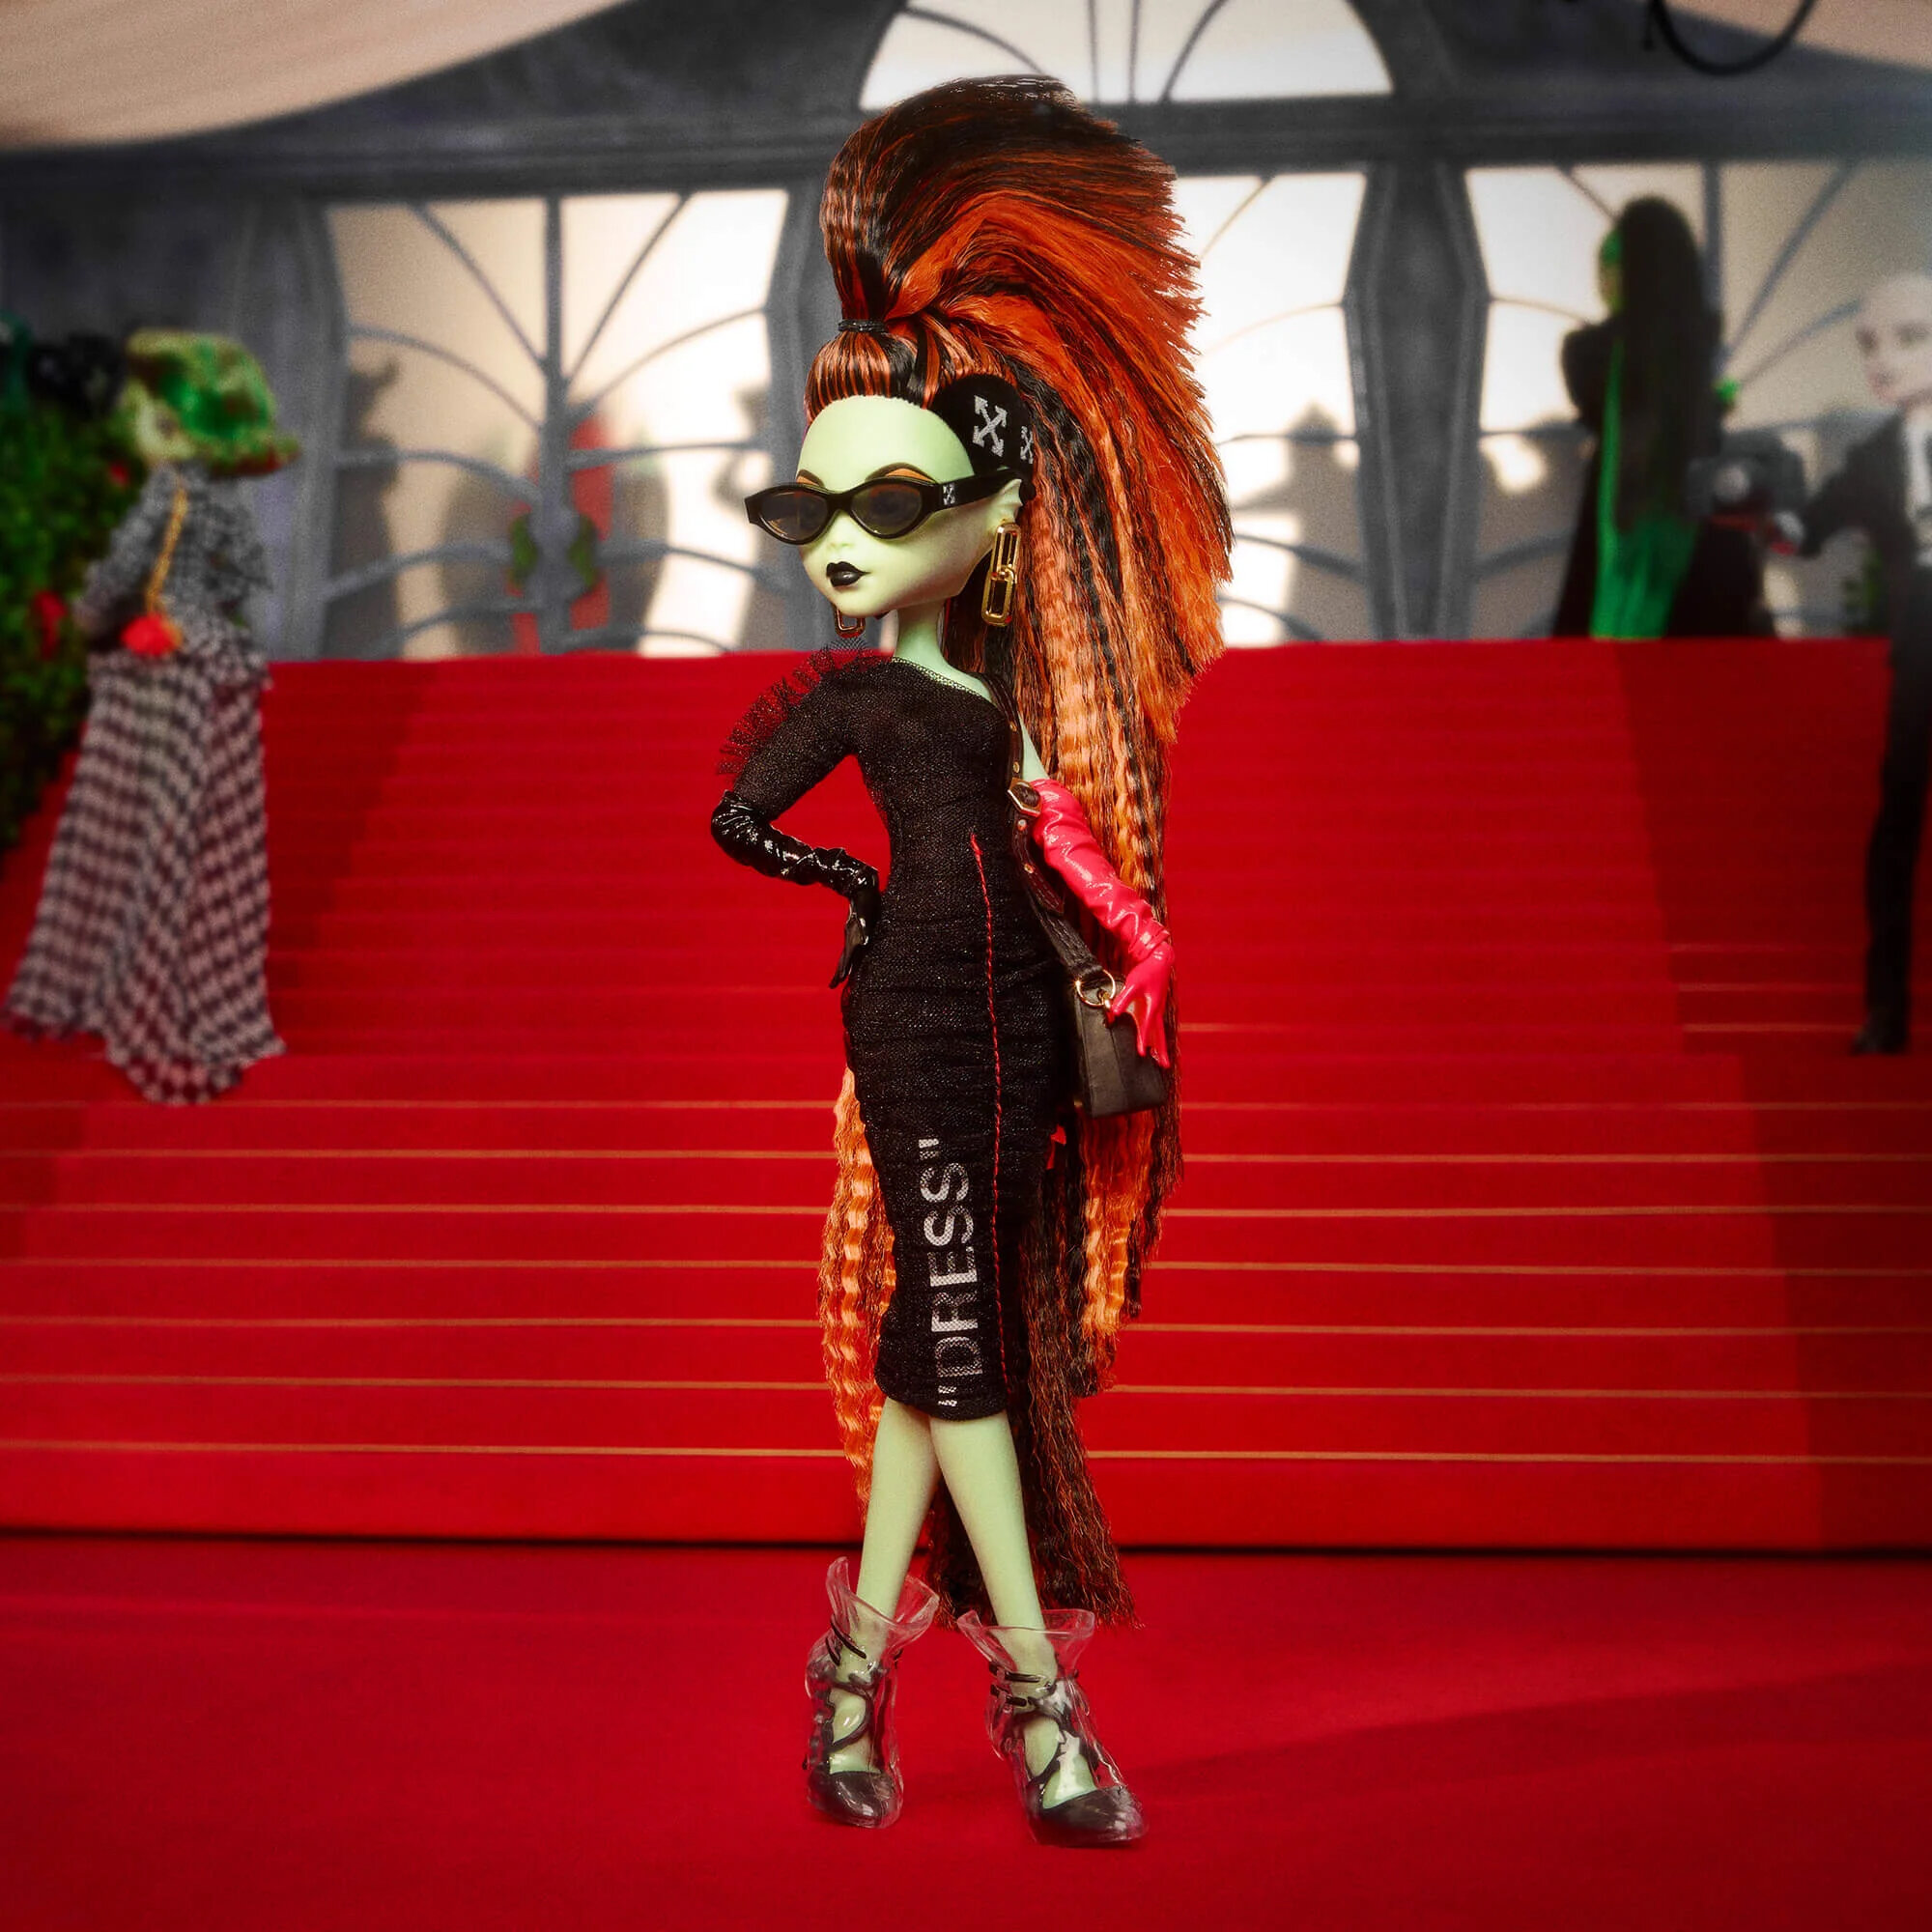 Кукла Электра Мелоди эксклюзив коллекционной Скулекторной серии торгового модного дома Офф-уайт Монстер хай Monster High Off-White Electra Melody.